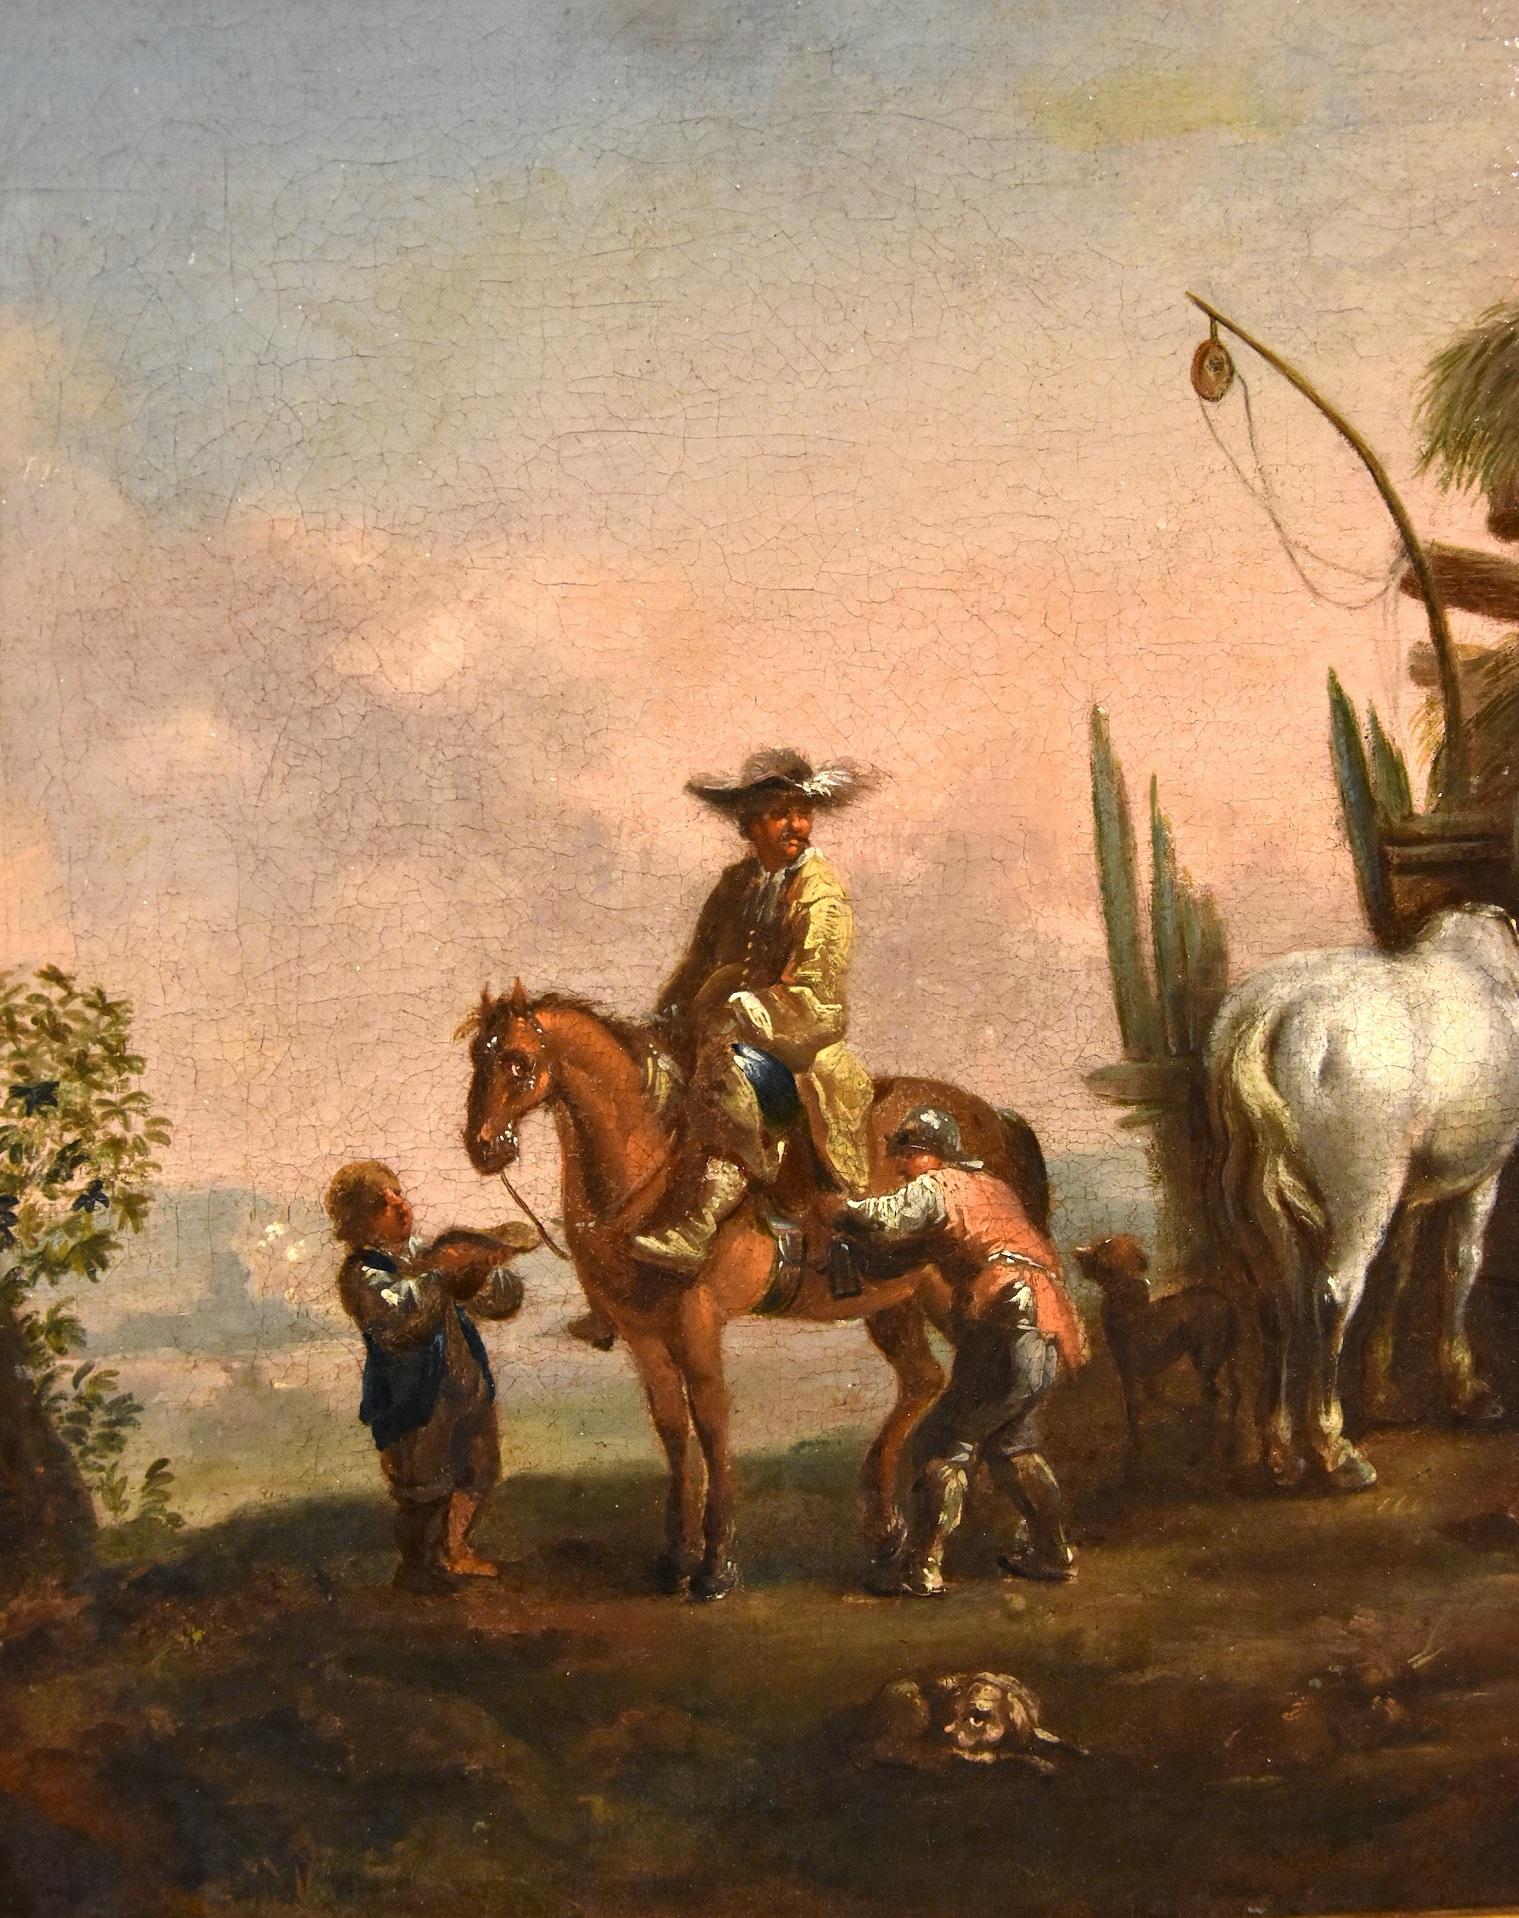 Nach Simon Johannes van Douw (Antwerpen ca. 1630 - ca. 1677) 
Der Halt eines Reisenden zu Pferd in der Nähe einer Poststation

Ölgemälde auf Leinwand
45 x 55 cm
Im Rahmen cm. 55 x 65

In diesem angenehmen Gemälde, das einen Ritter darstellt, der in